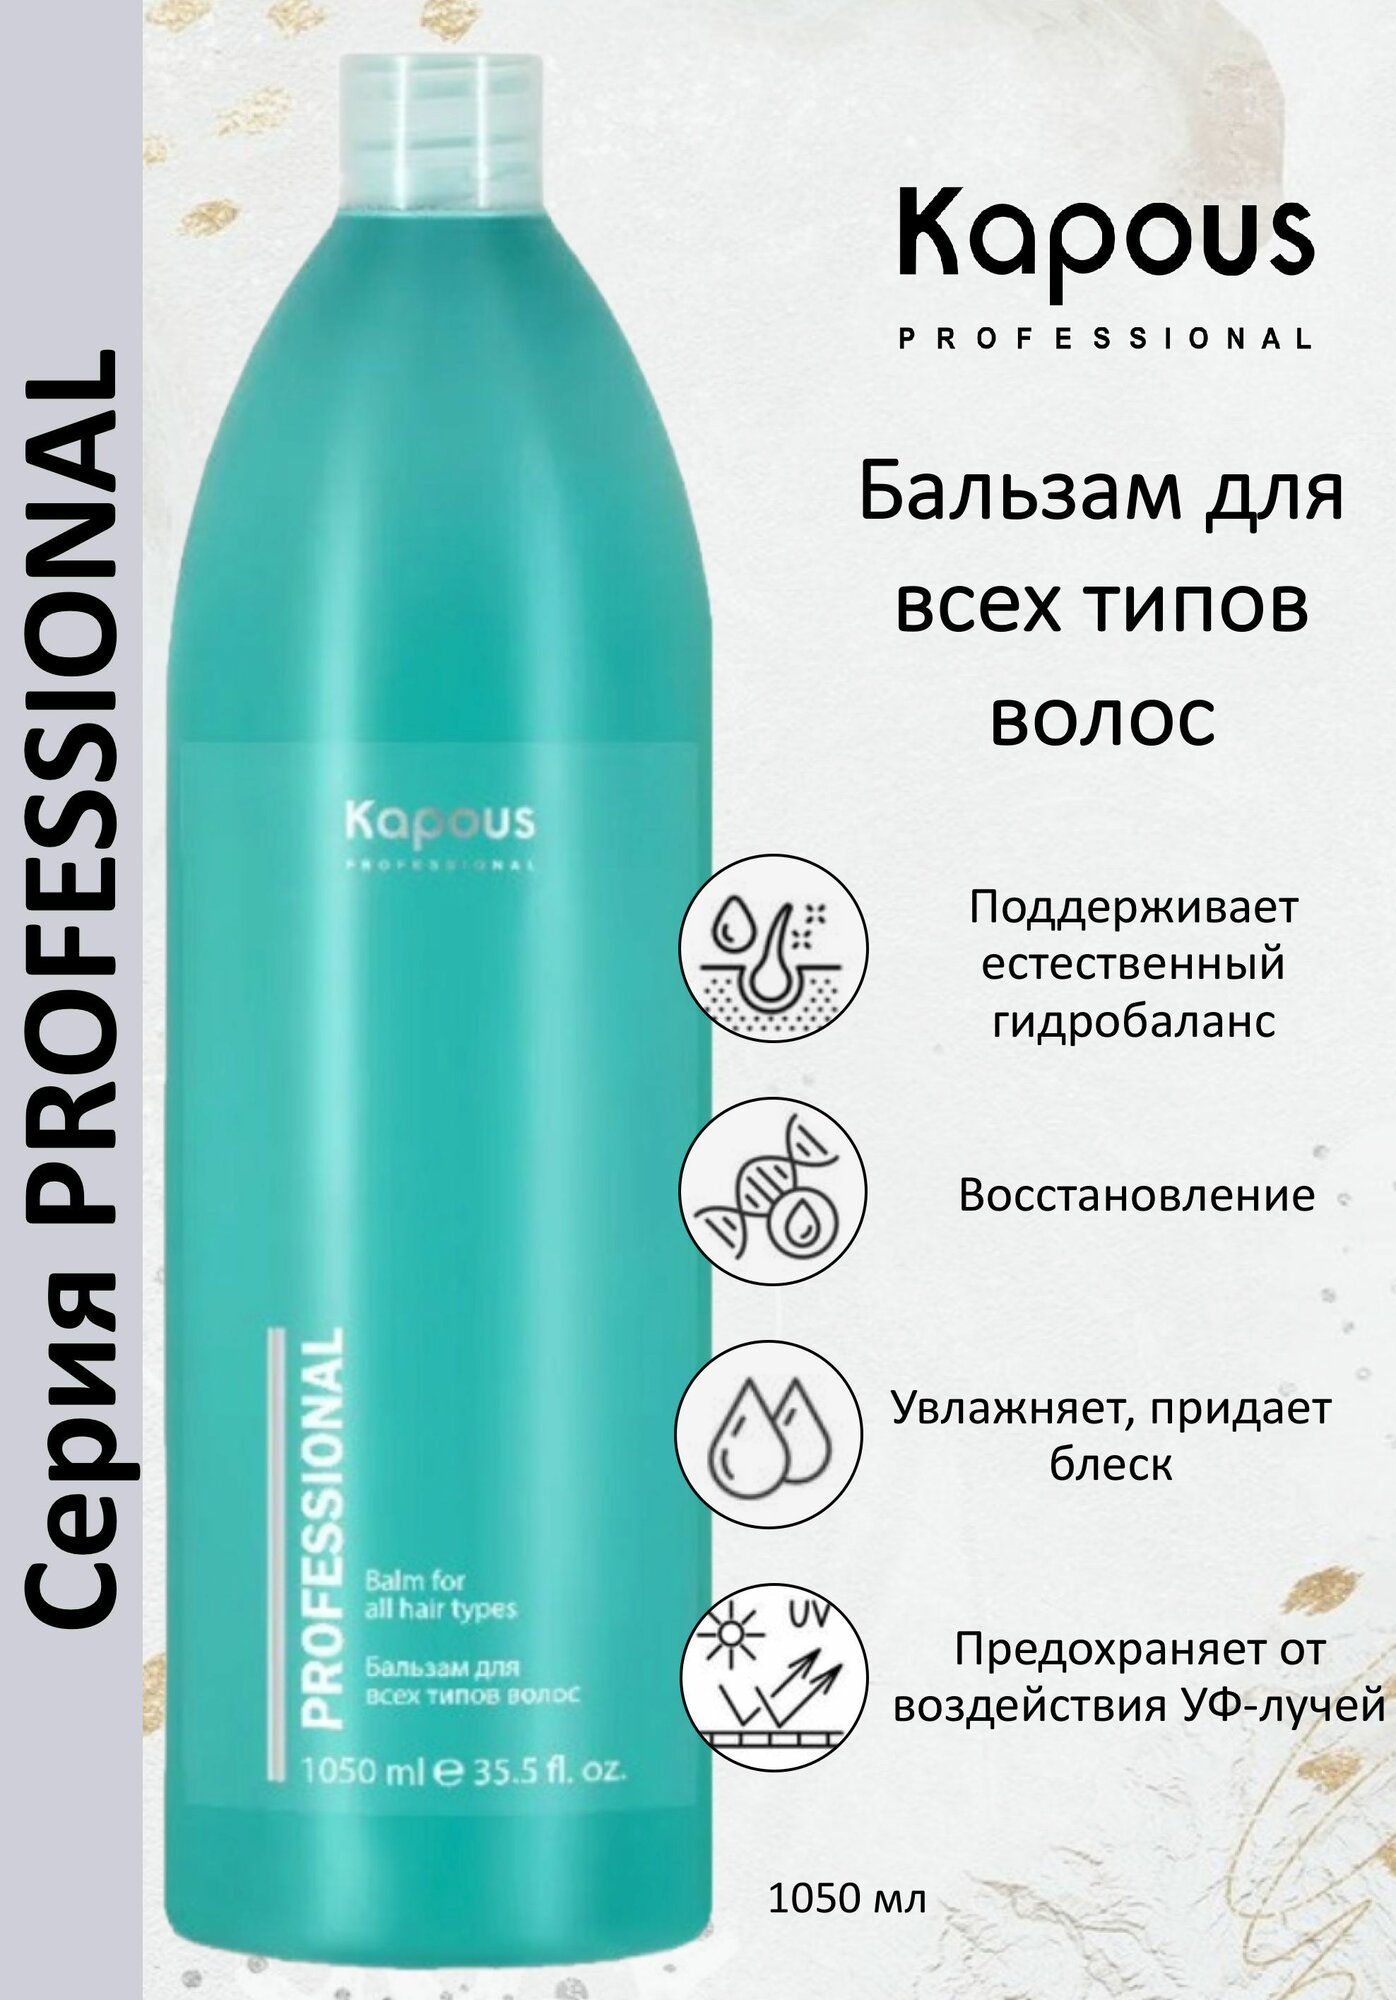 Kapous Professional Бальзам для всех типов волос 1050мл